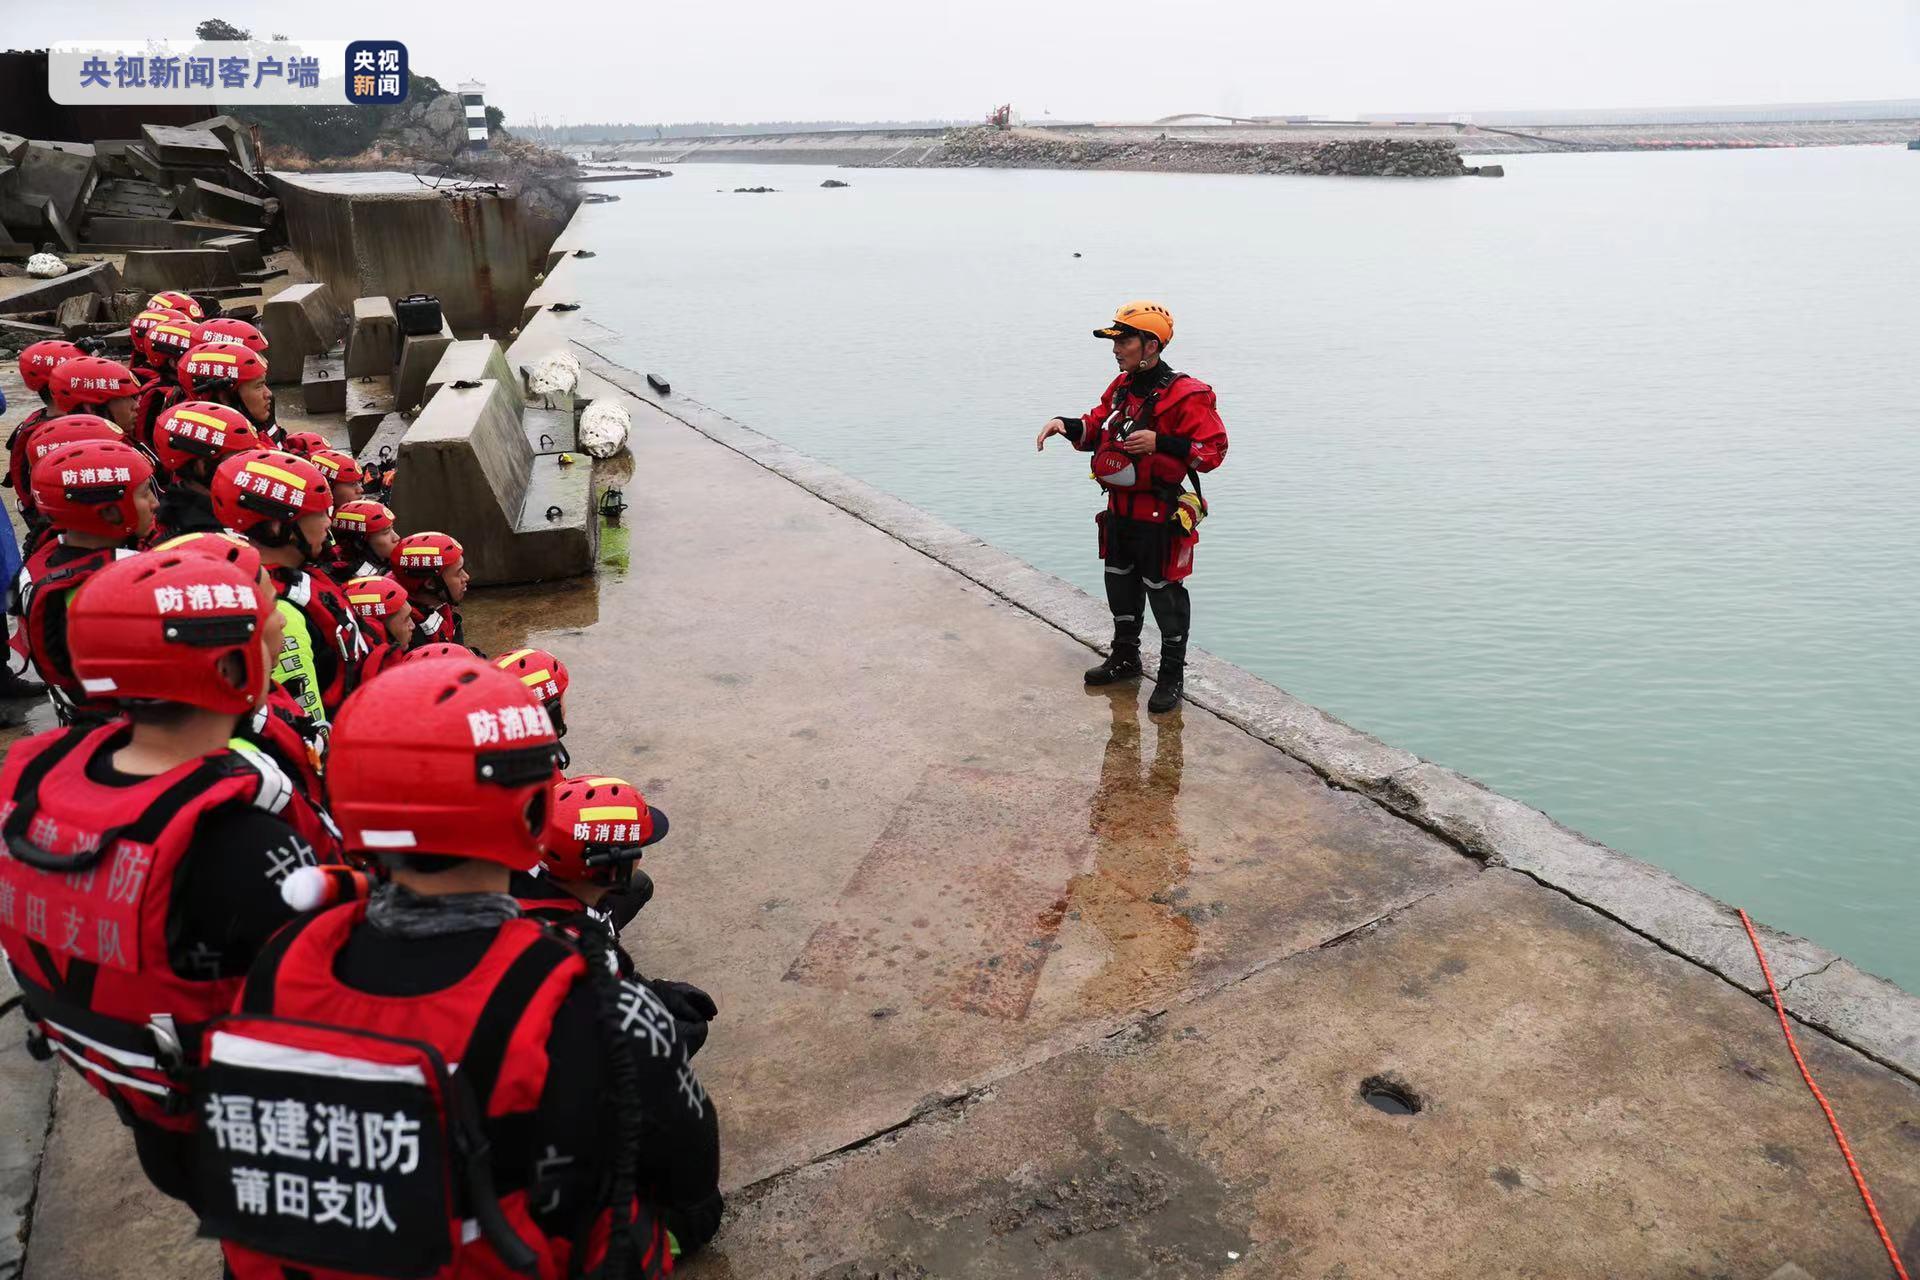 福建省防指维持防暴雨Ⅲ级应急响应 480名消防救援人员前置备勤